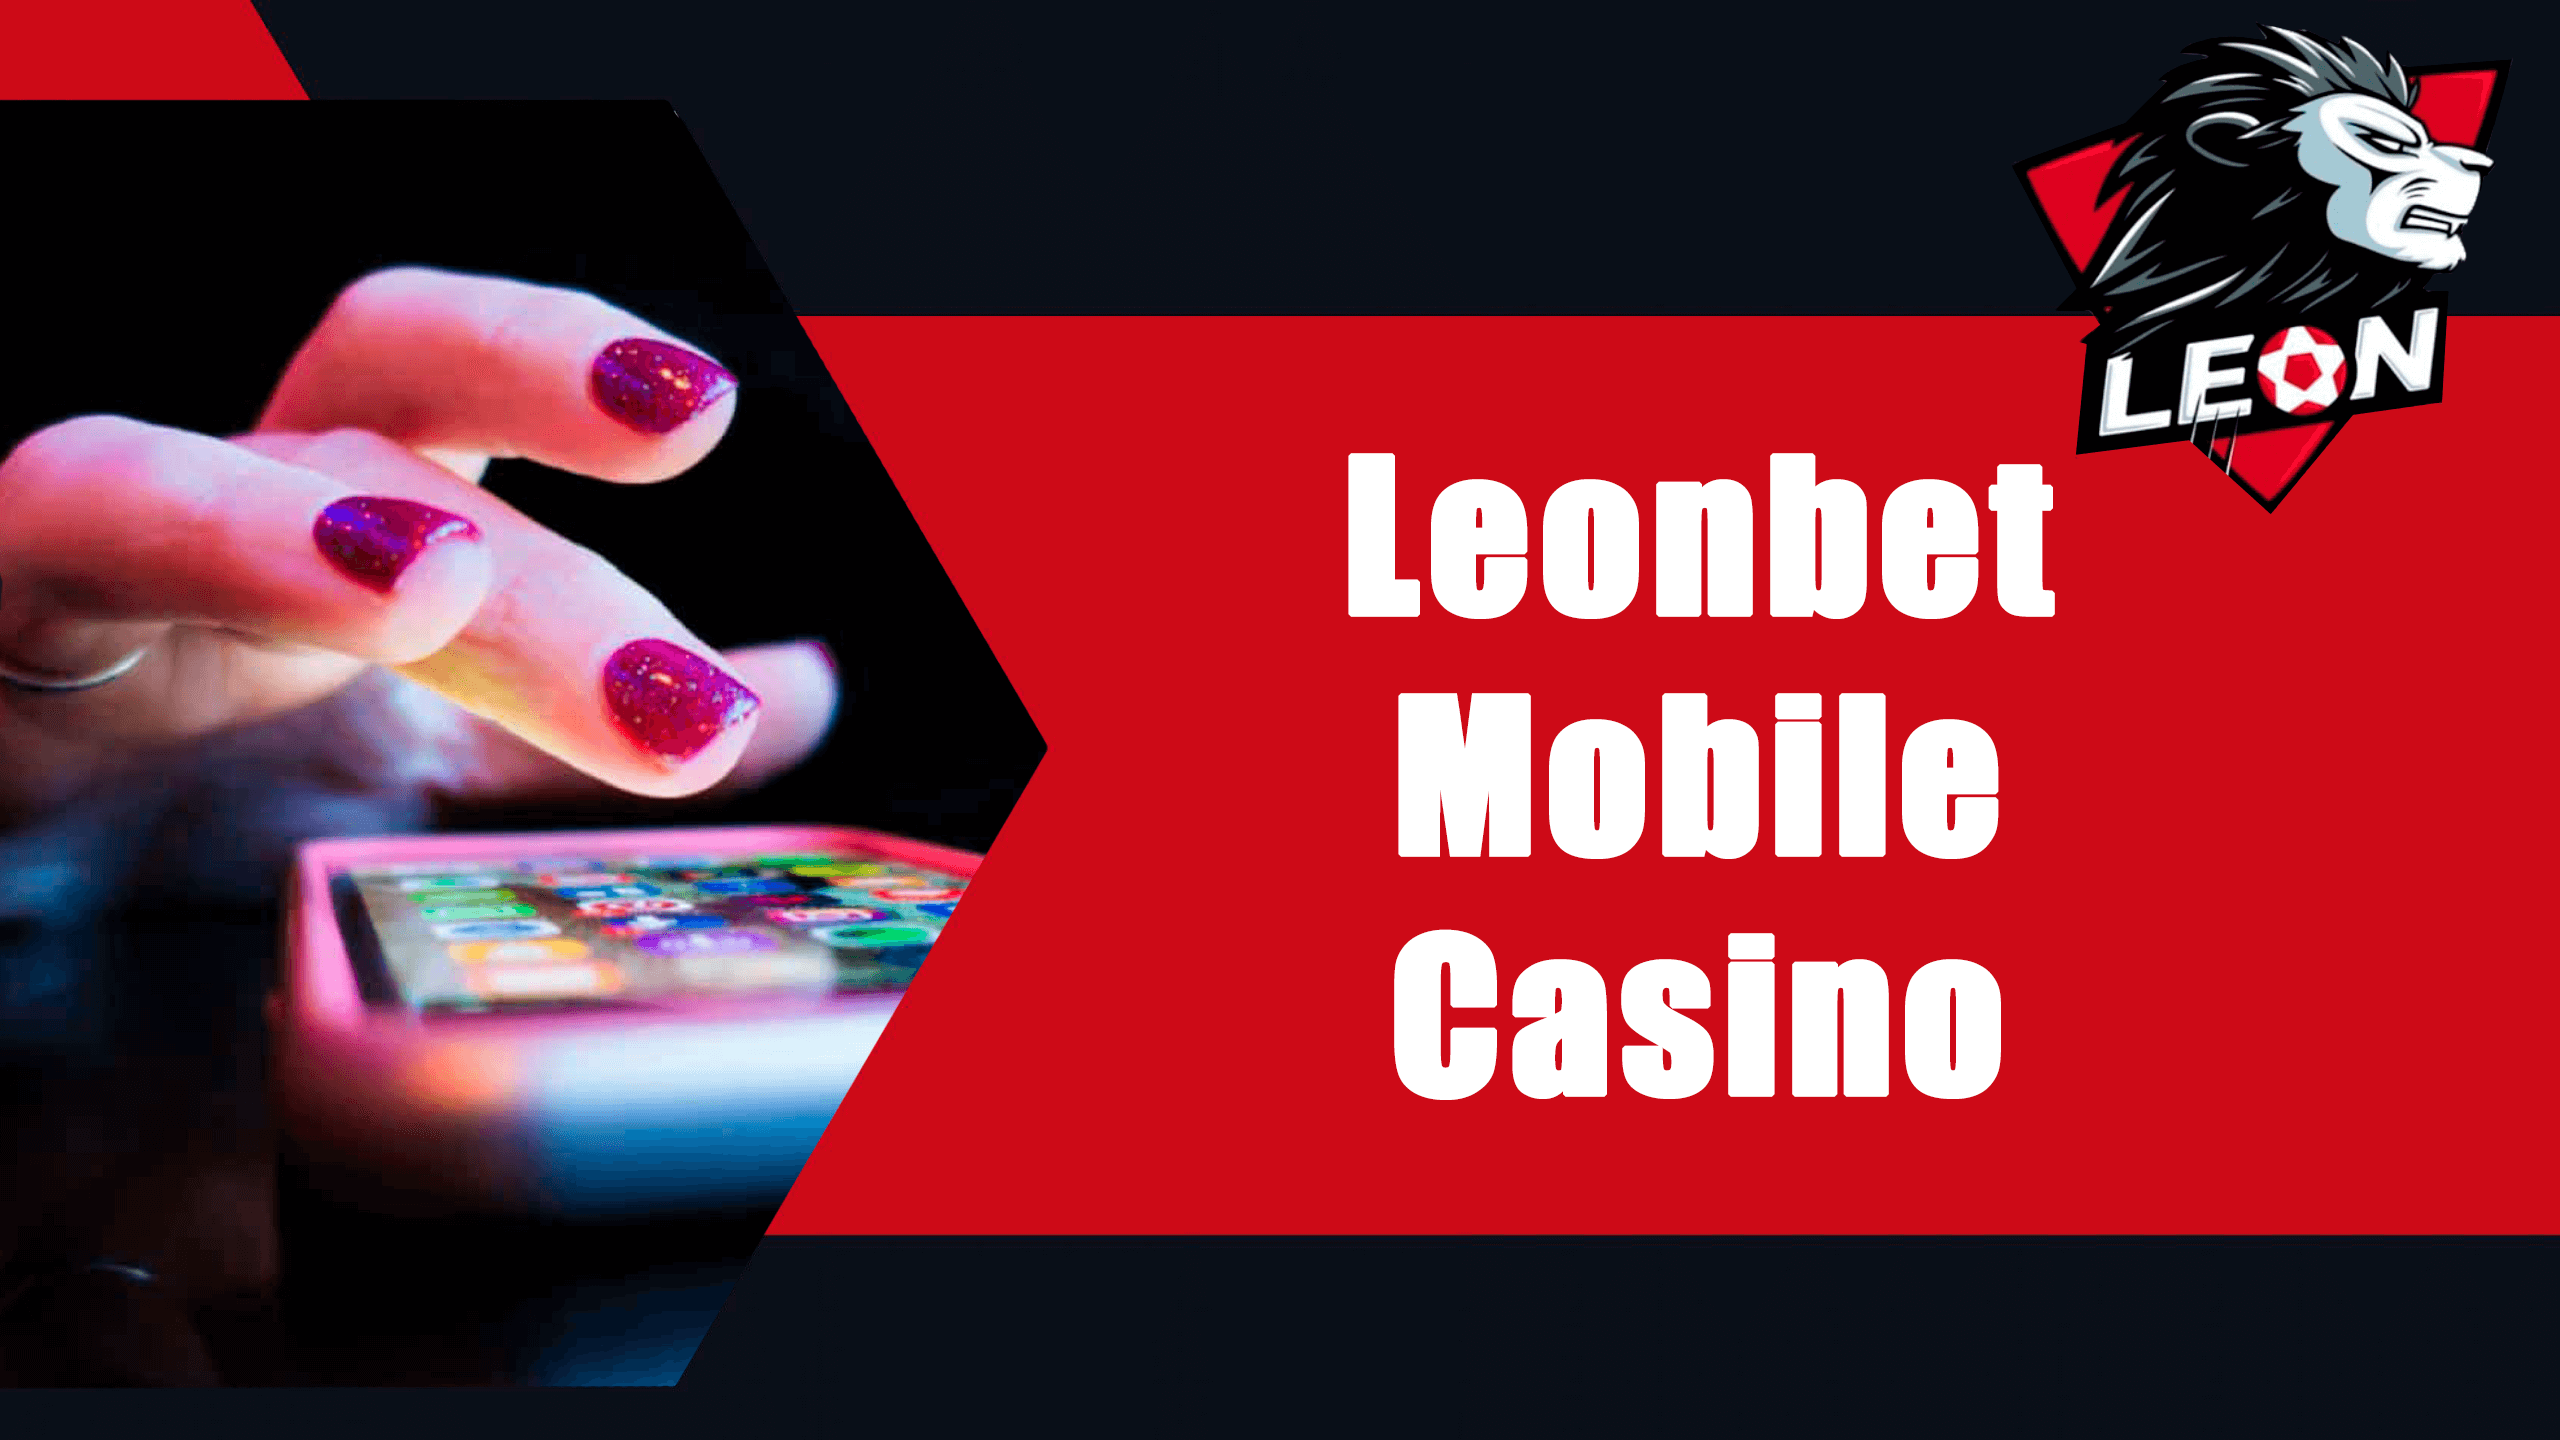 leonbet mobile casino.